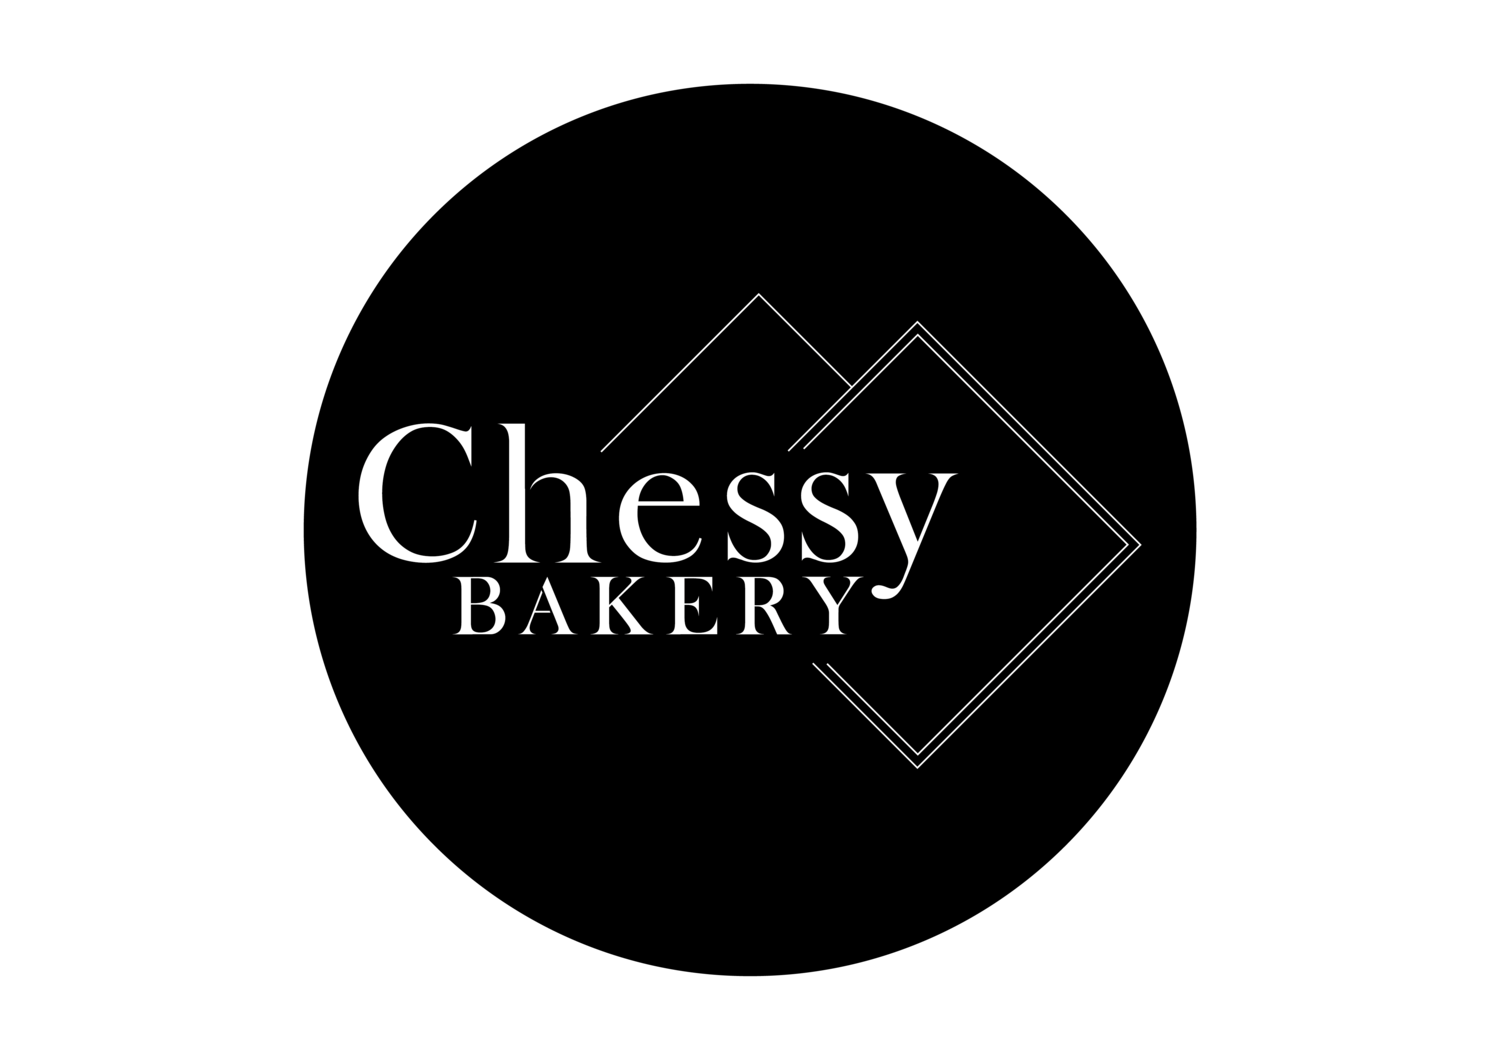 Chessy Bakery